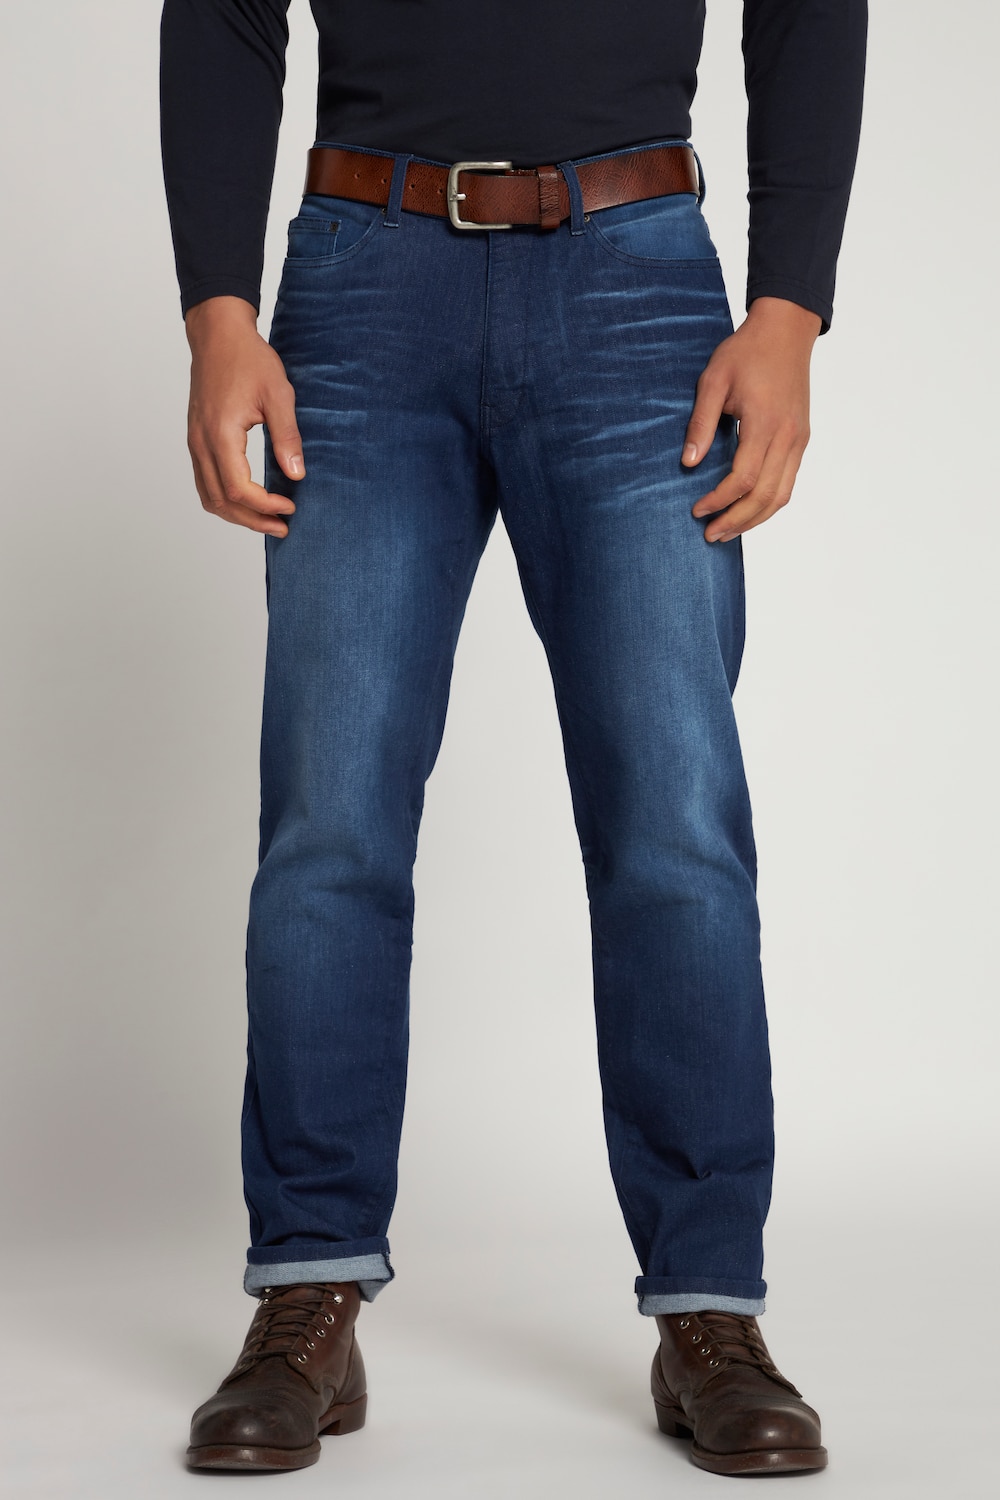 Grote Maten jeans, Heren, blauw, Maat: 27, Katoen/Polyester, JP1880